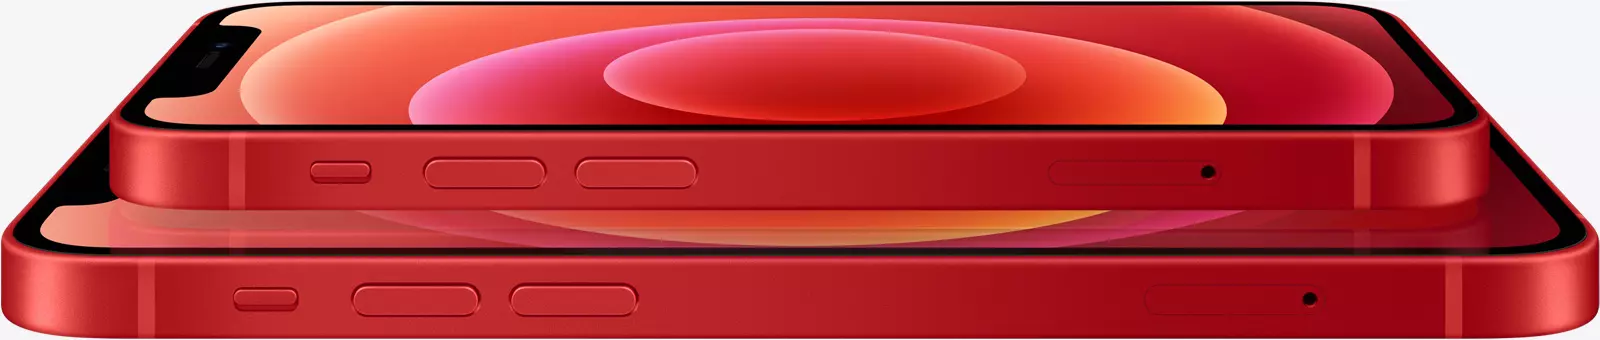 Les autres différences et ressemblances entre iPhone 12 et 12 Pro